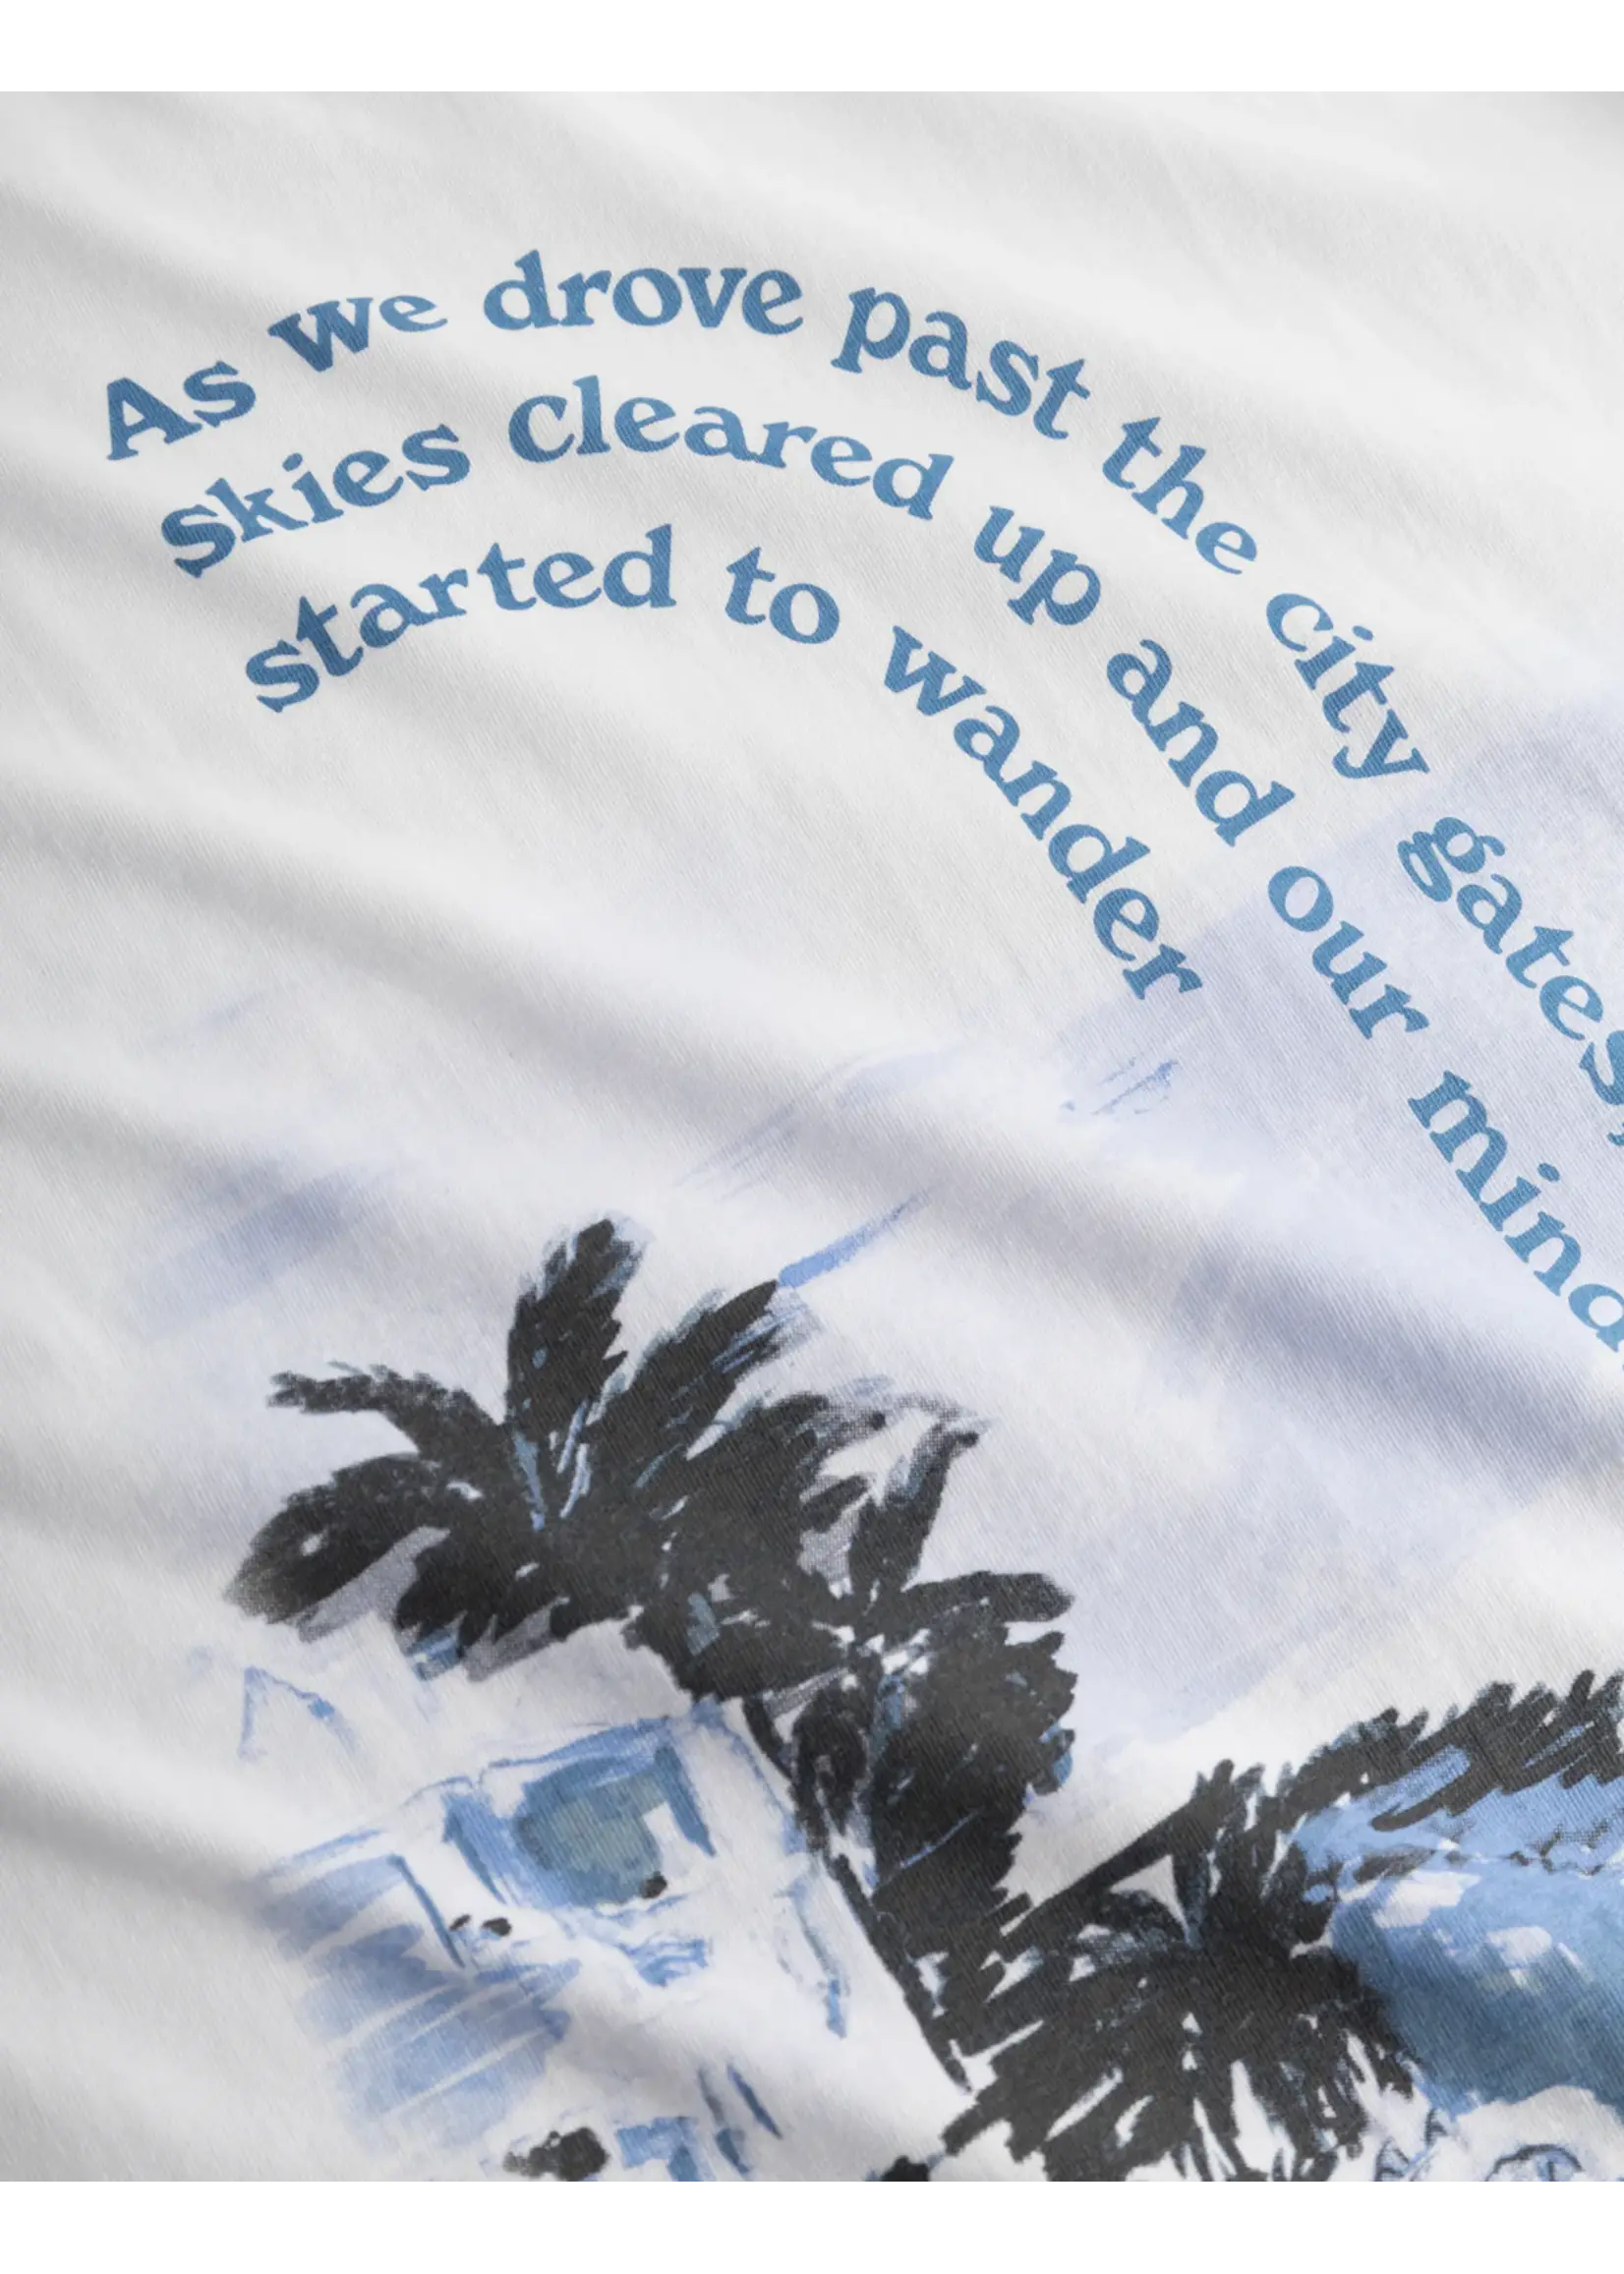 Les Deux Les Deux - Coastal T-Shirt - Wit